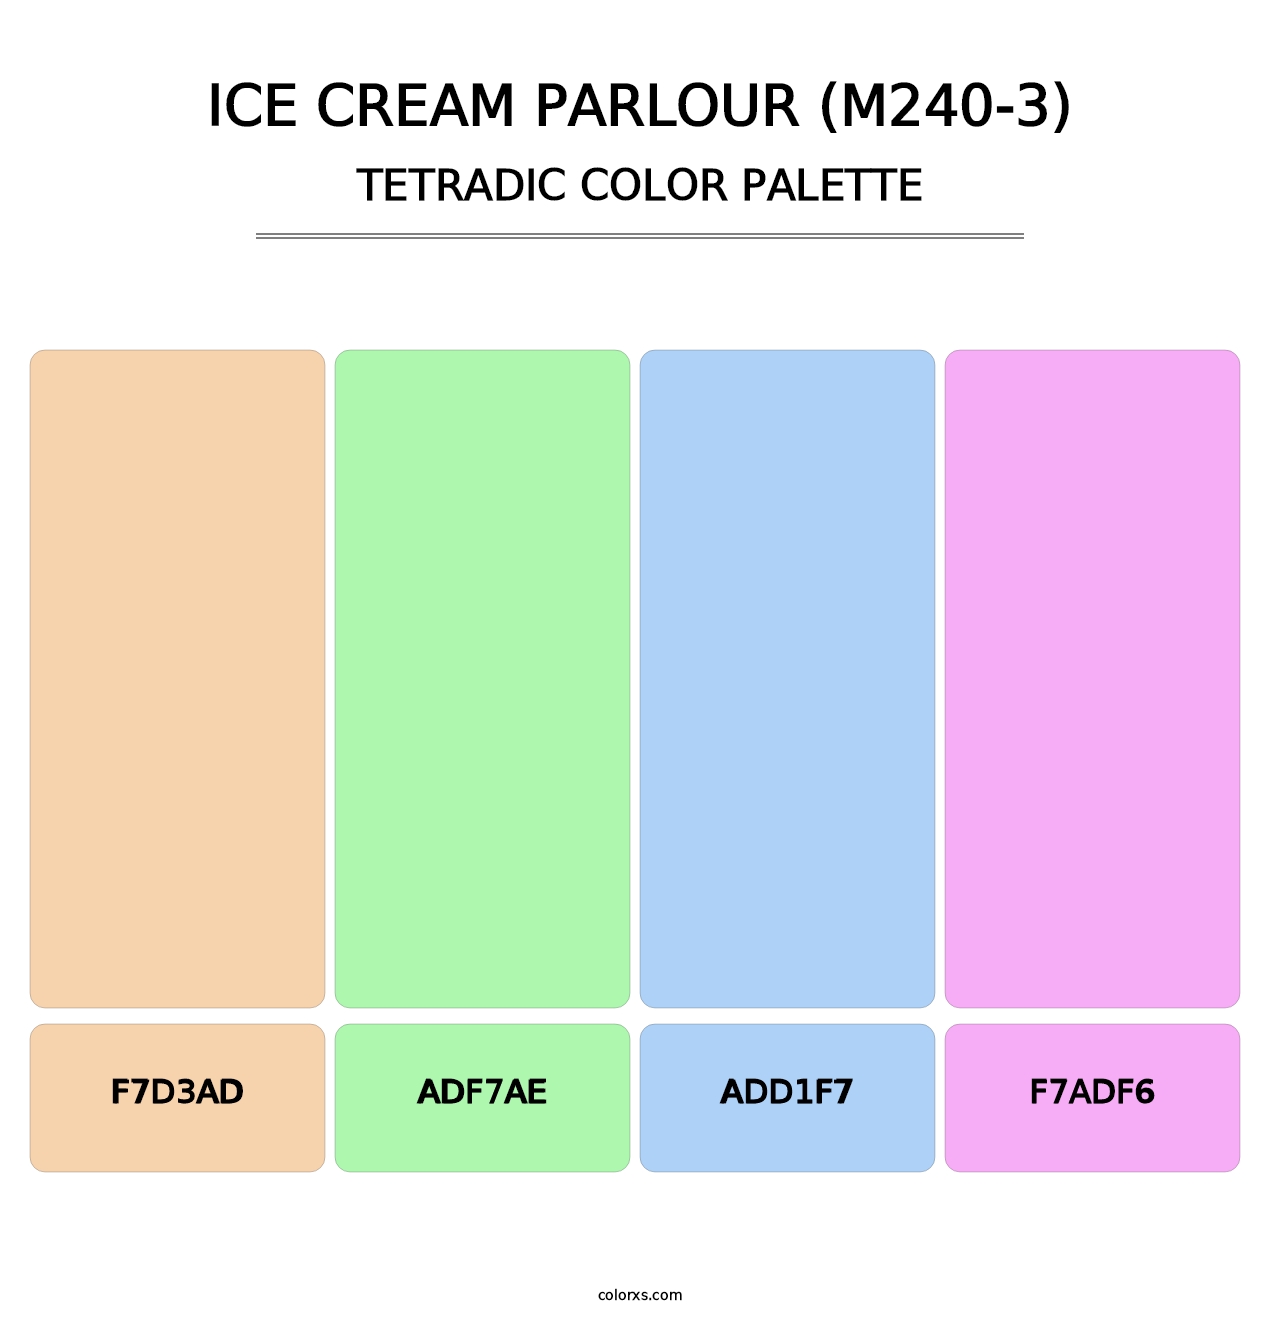 Ice Cream Parlour (M240-3) - Tetradic Color Palette